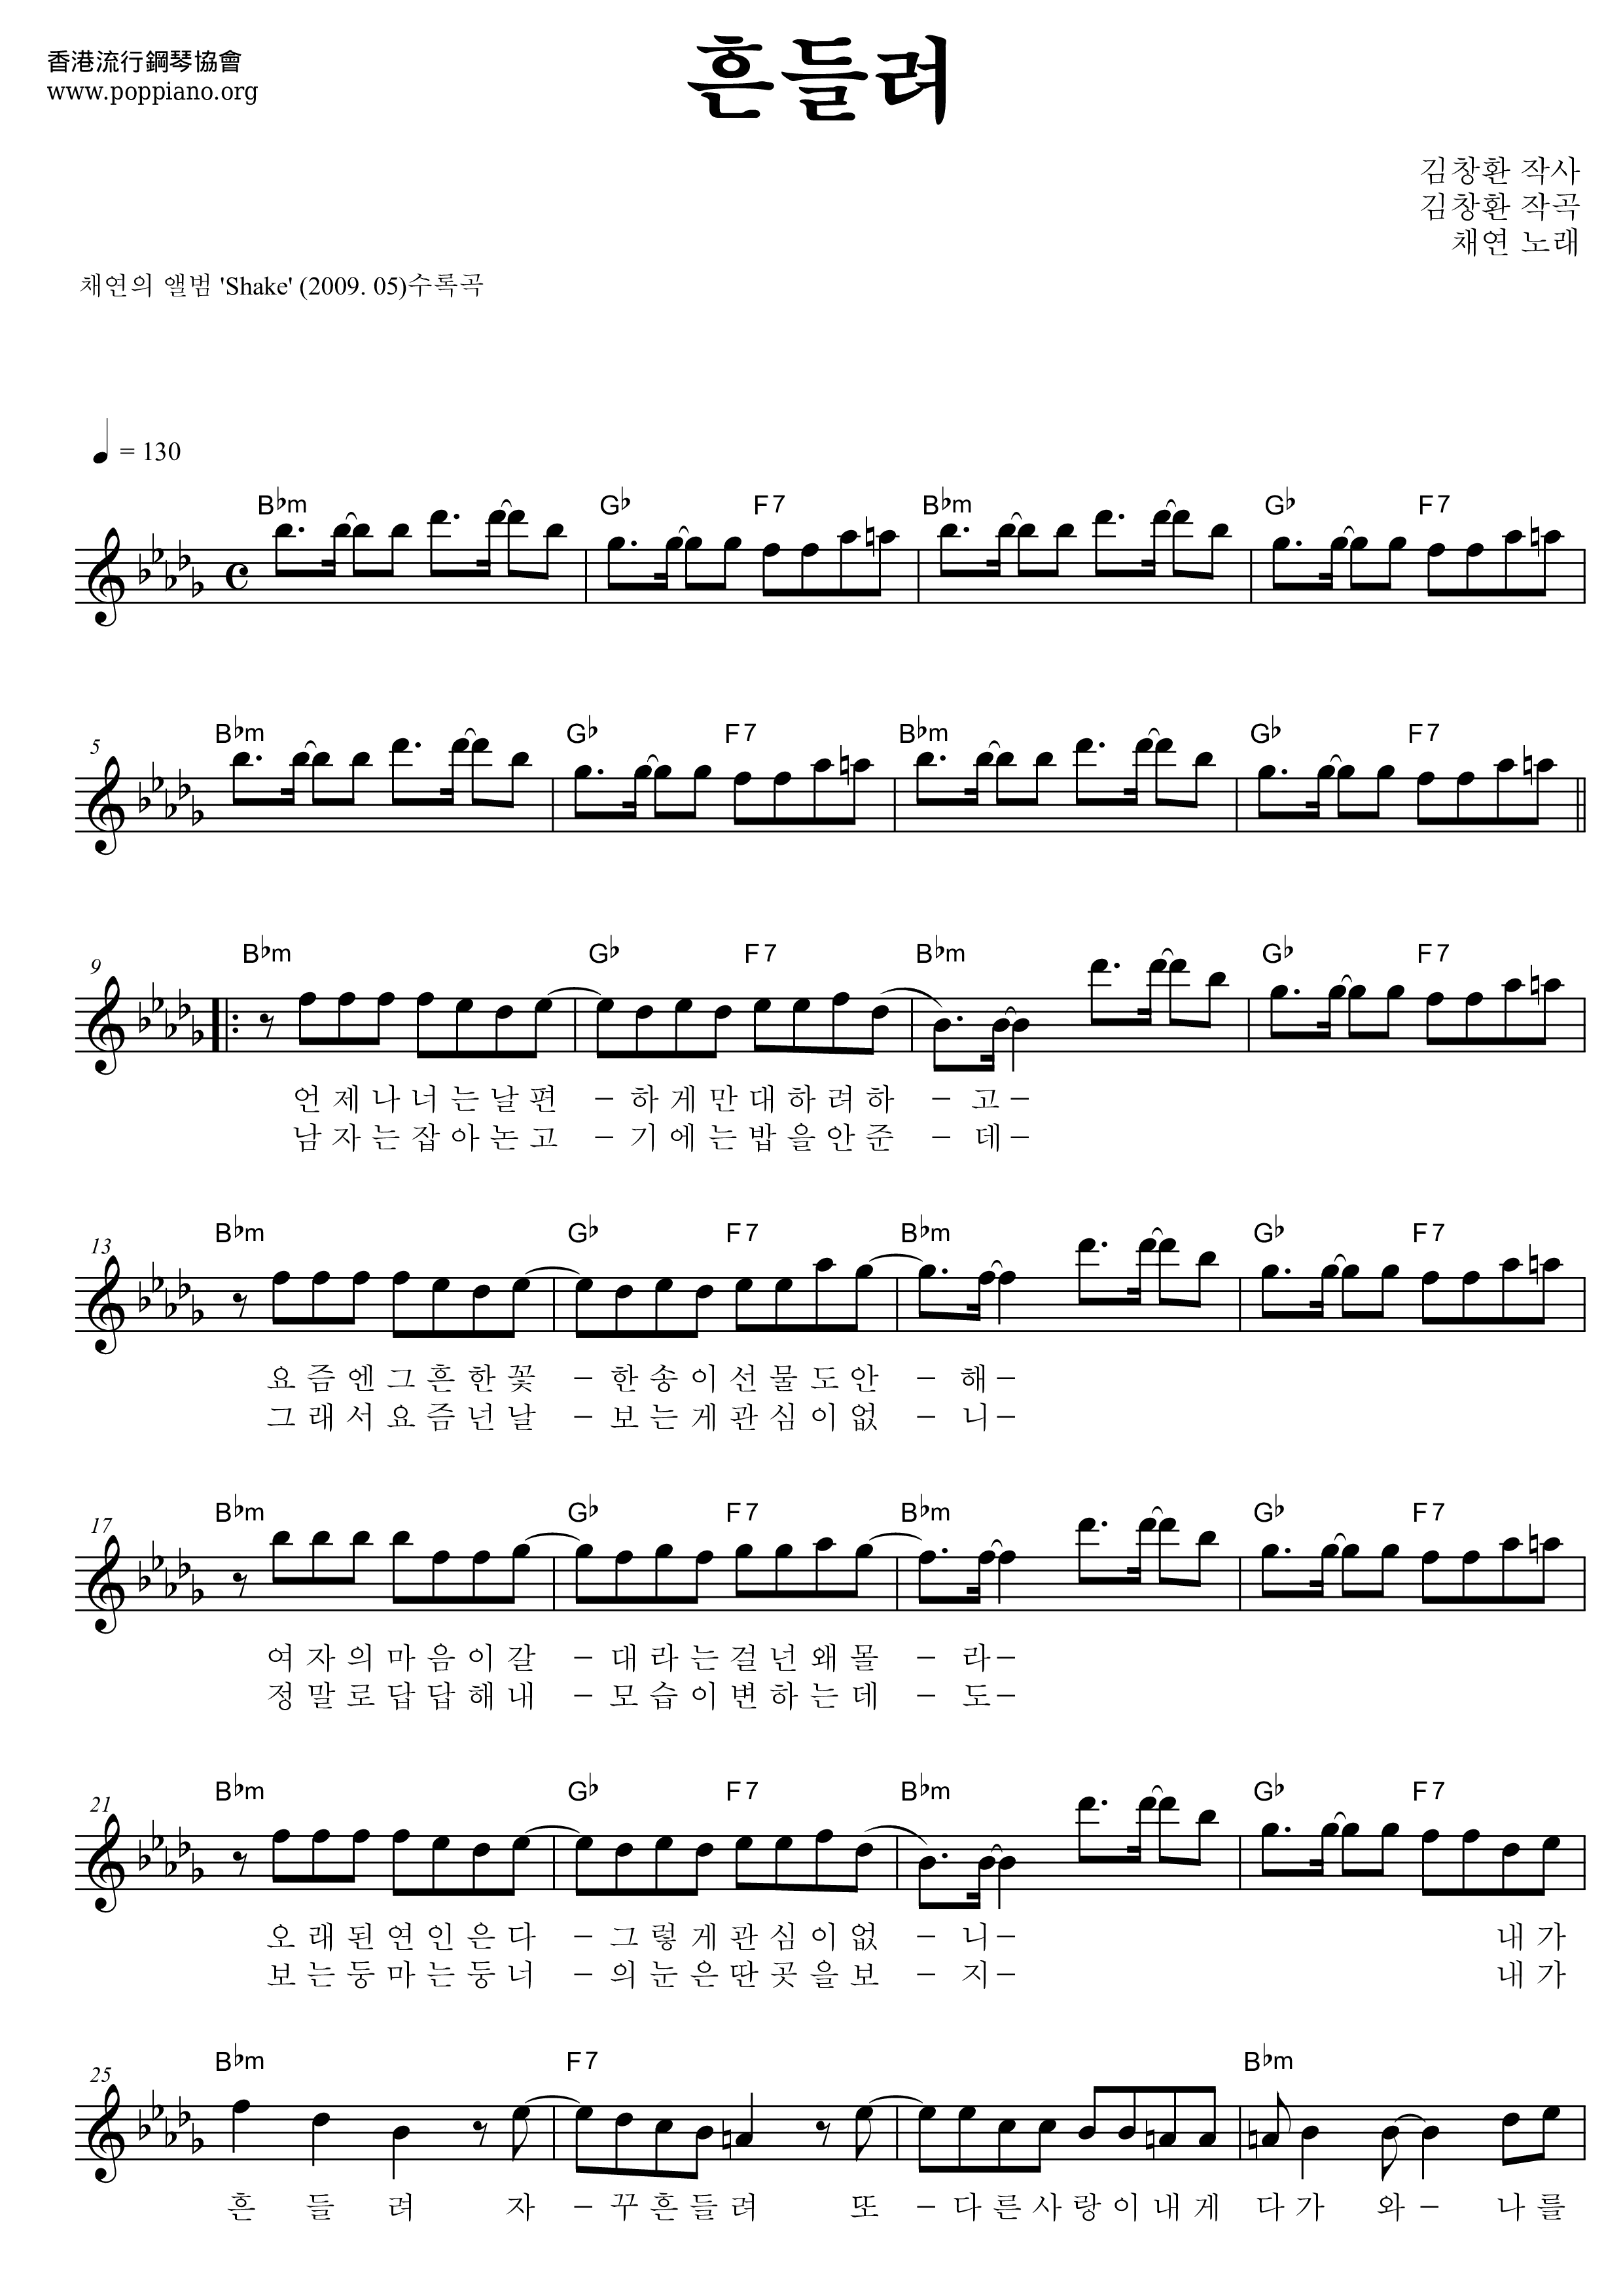 Heundeullyo (Shake) Score